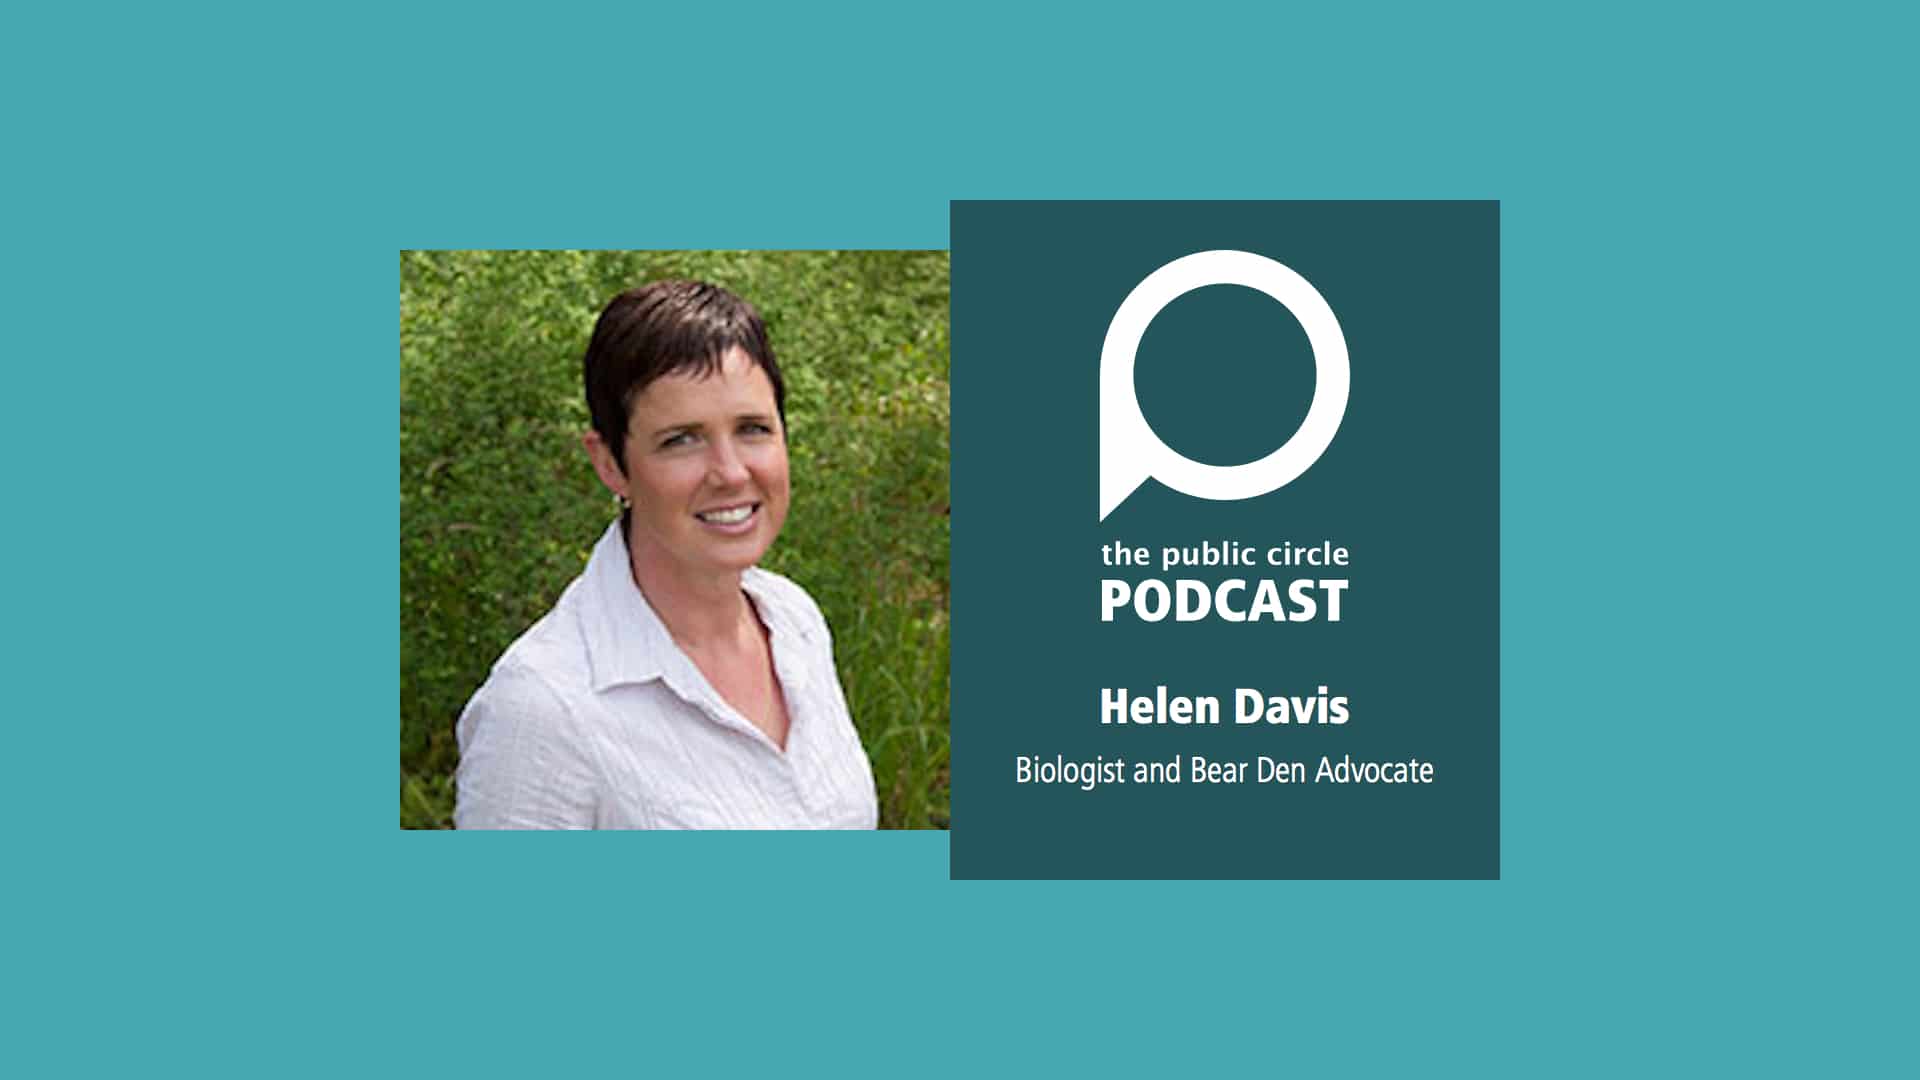 PODCAST: Helen Davis – Biologist and Bear Den Advocate